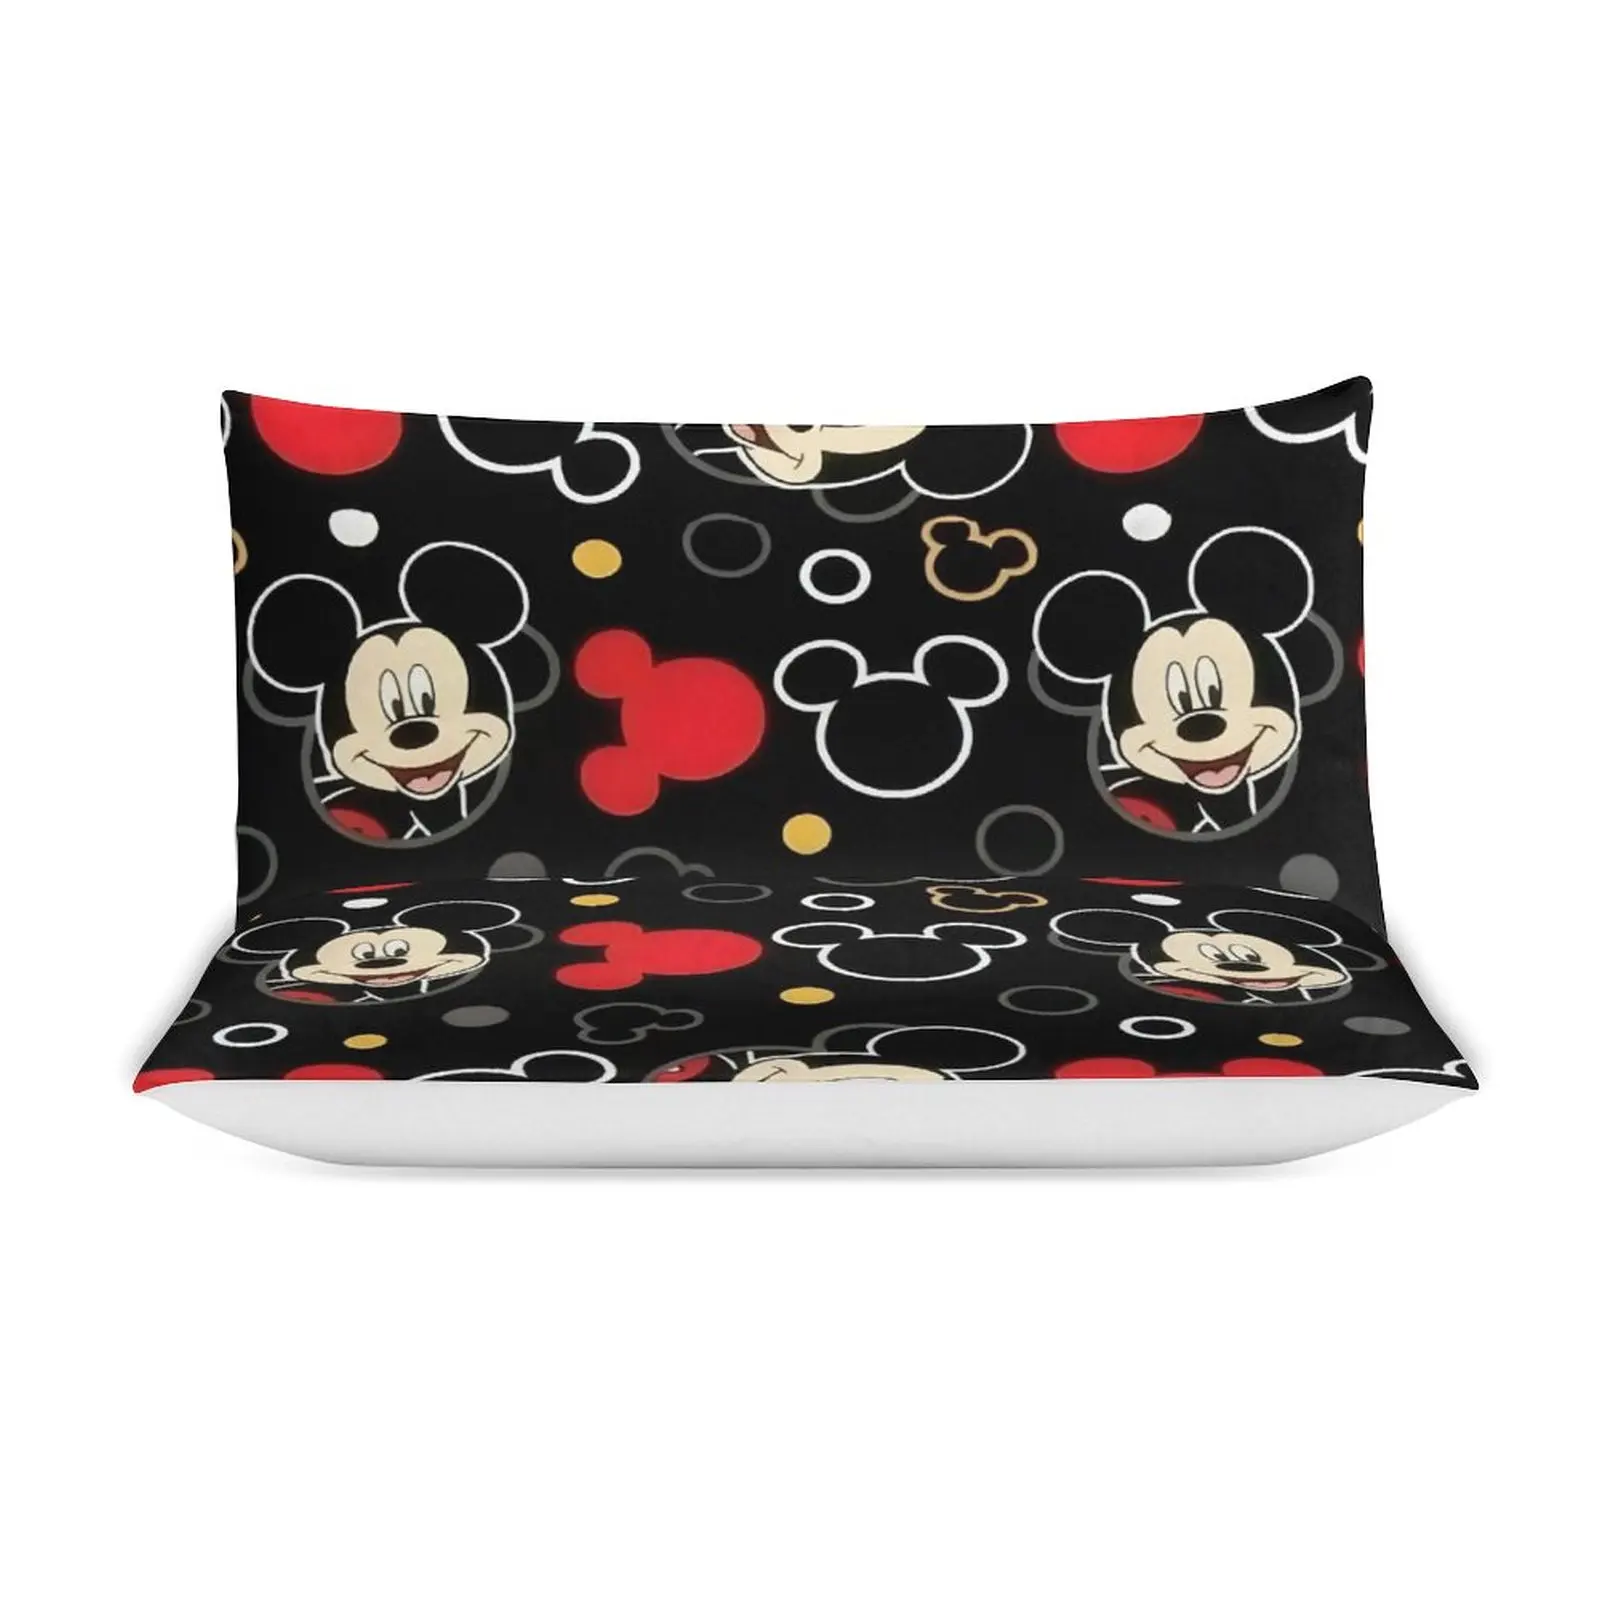 

Комплект постельного белья с пододеяльником и изображением Микки и Минни Маус